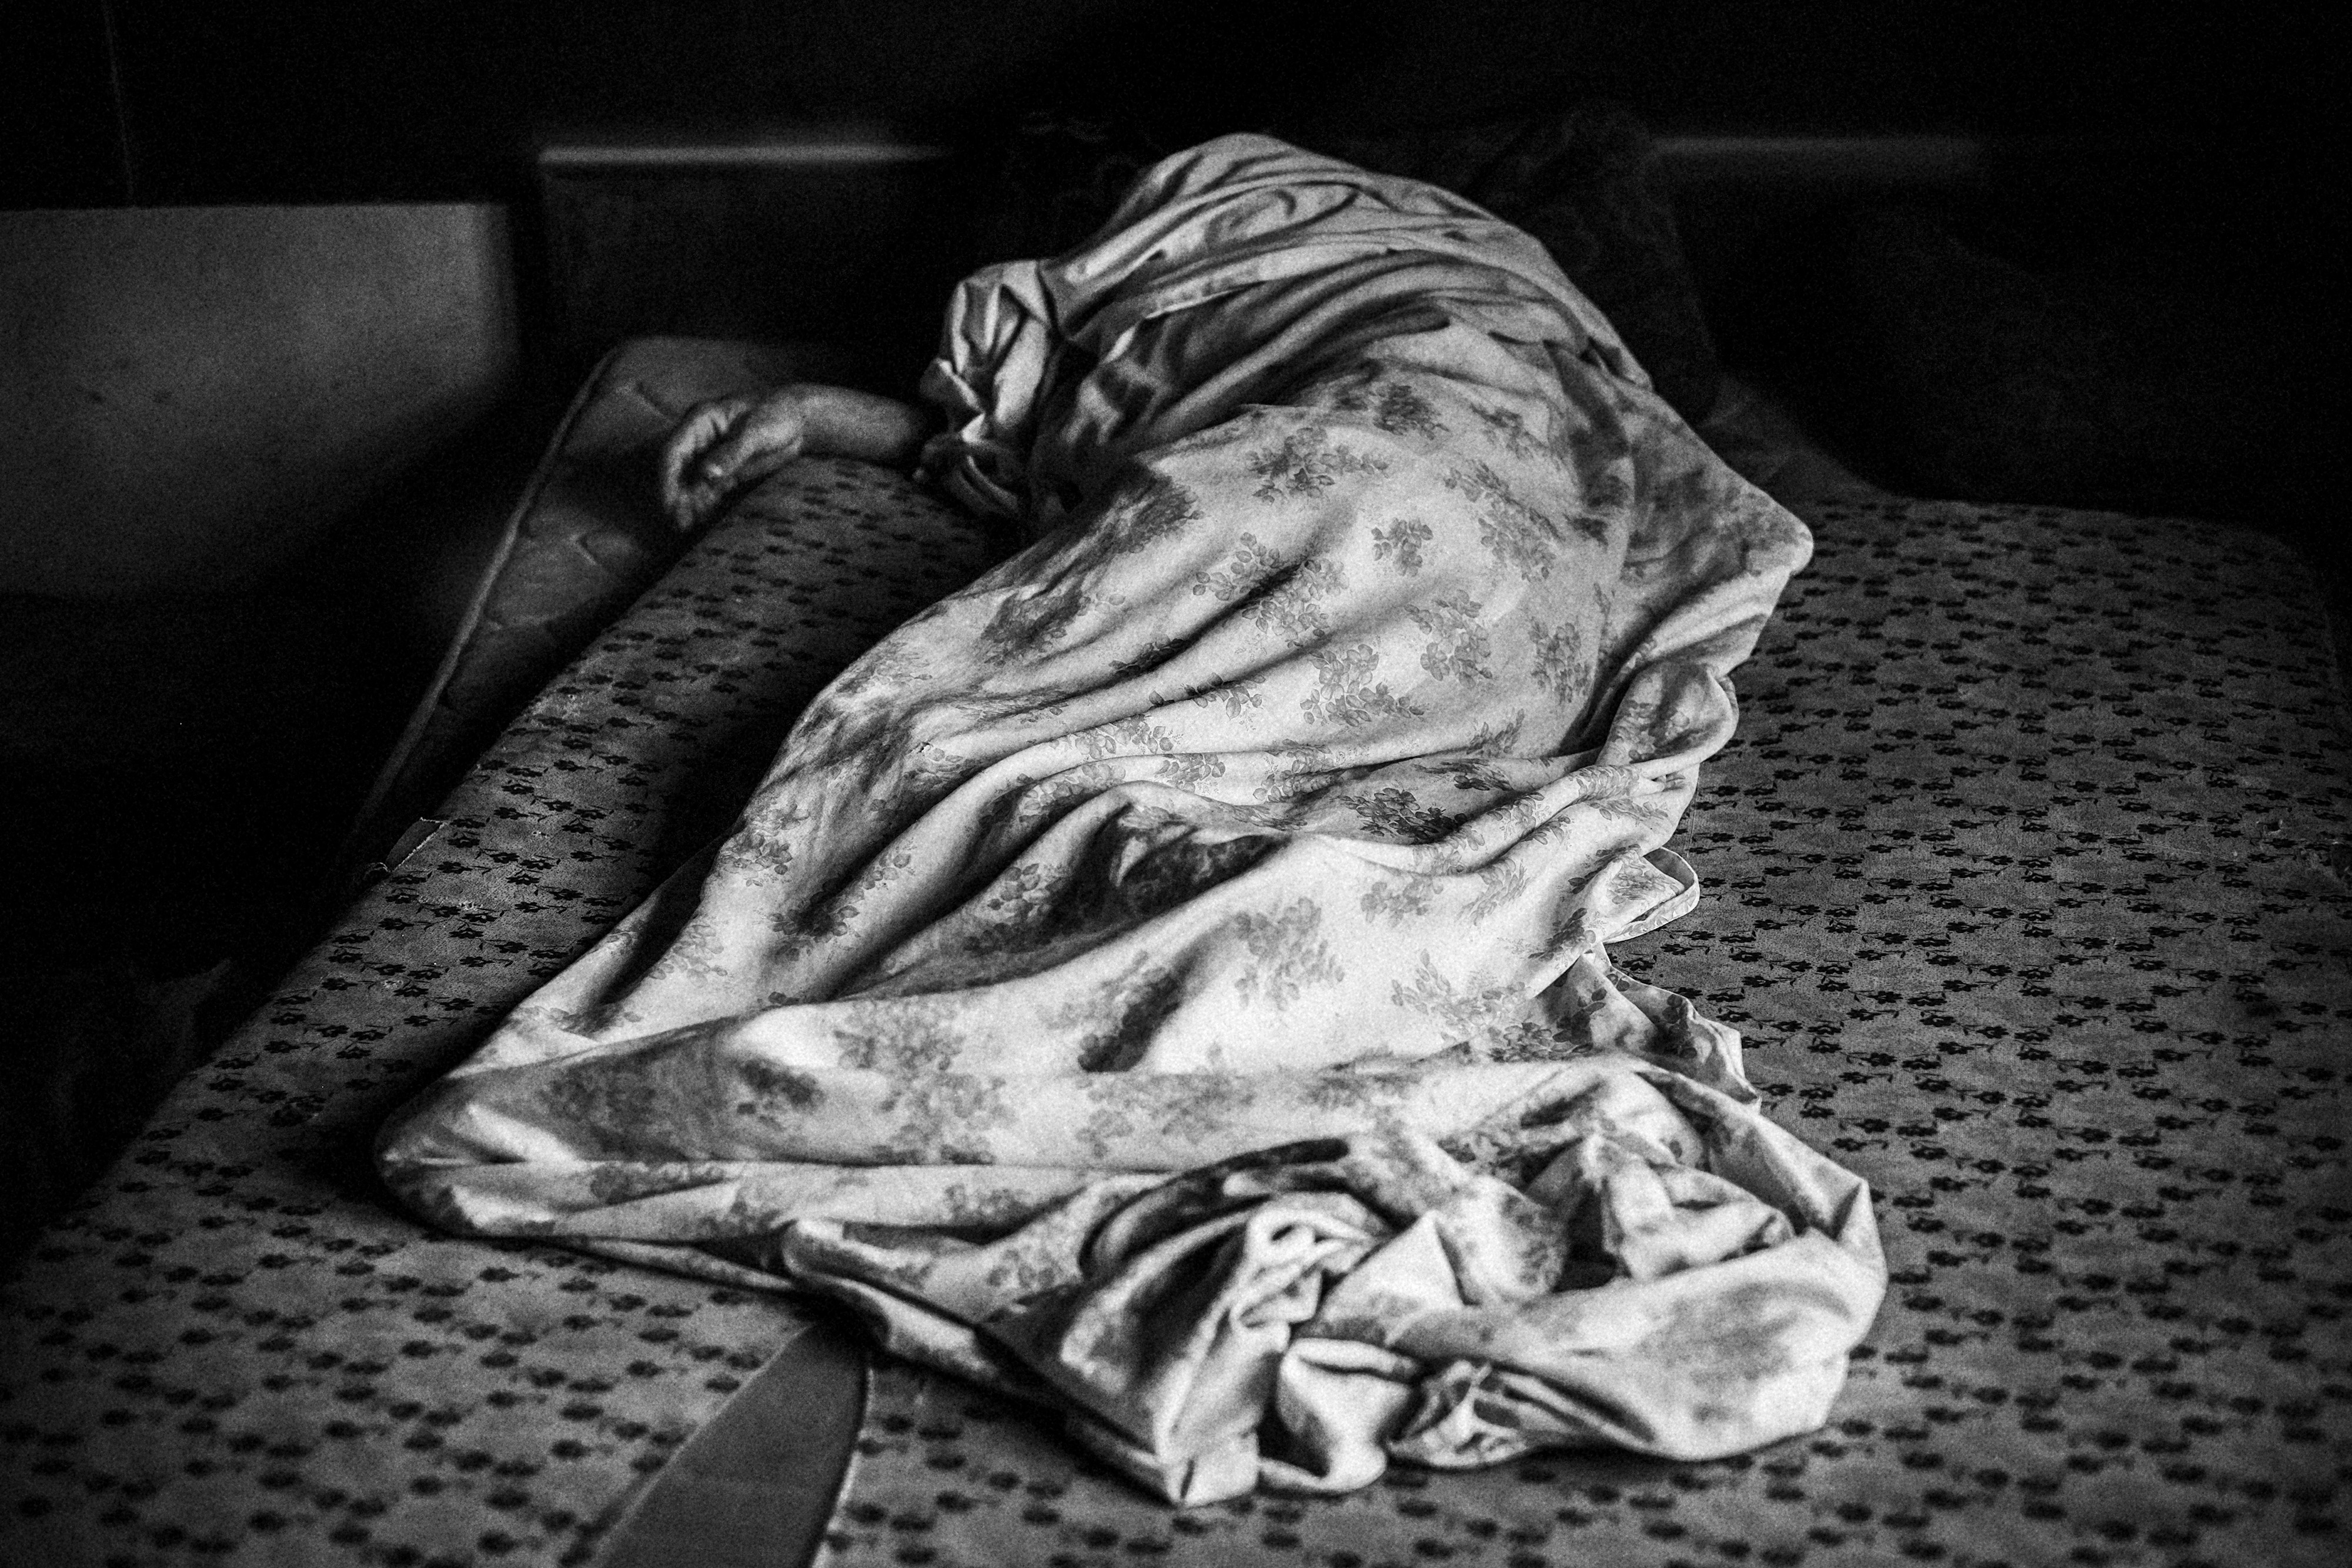 13 de julio de 2014. Vitor, 65 años, duerme en una cama en una fábrica abandonada. Vitor fue invitado a vivir allí por otros residentes de la fábrica cuando le vieron durmiendo en la calle.